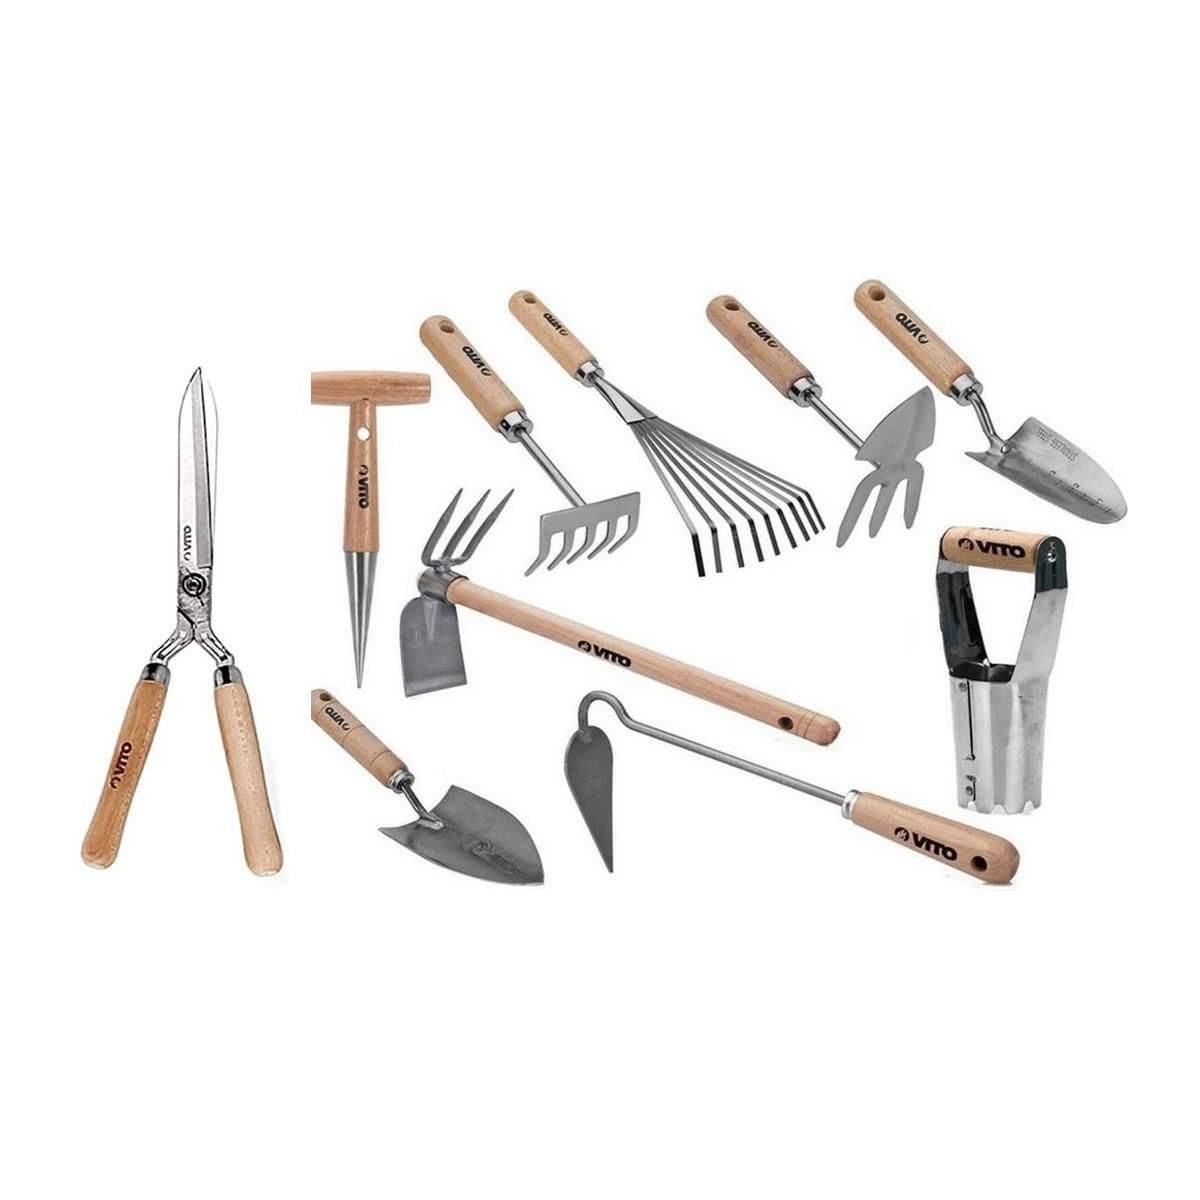 Kit 6 outils de jardin en bois de hêtre VITO - Univers du Pro